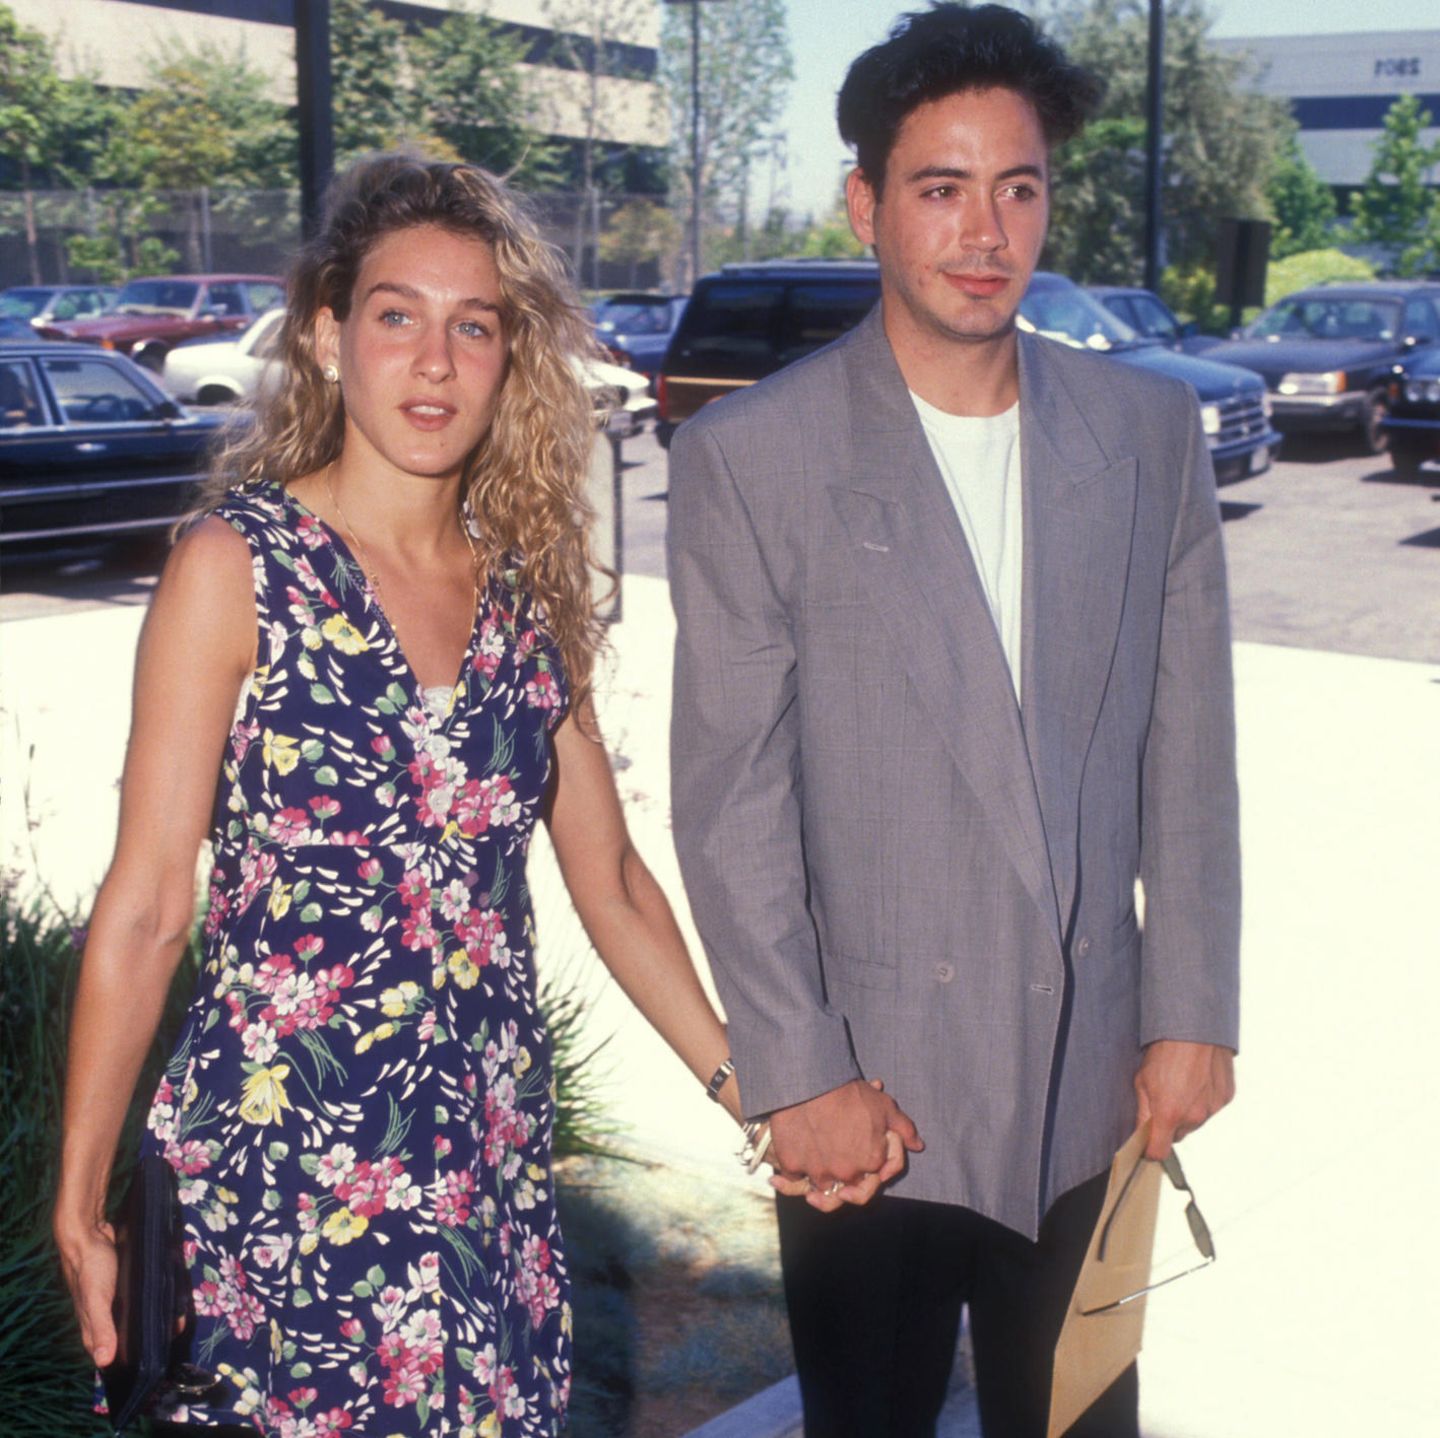 Stolze sieben Jahre war Sarah Jessica Parker die Frau an der Seite von Robert Downey Jr. 1991 sahen sich beide aber nach neuen Partnern um.